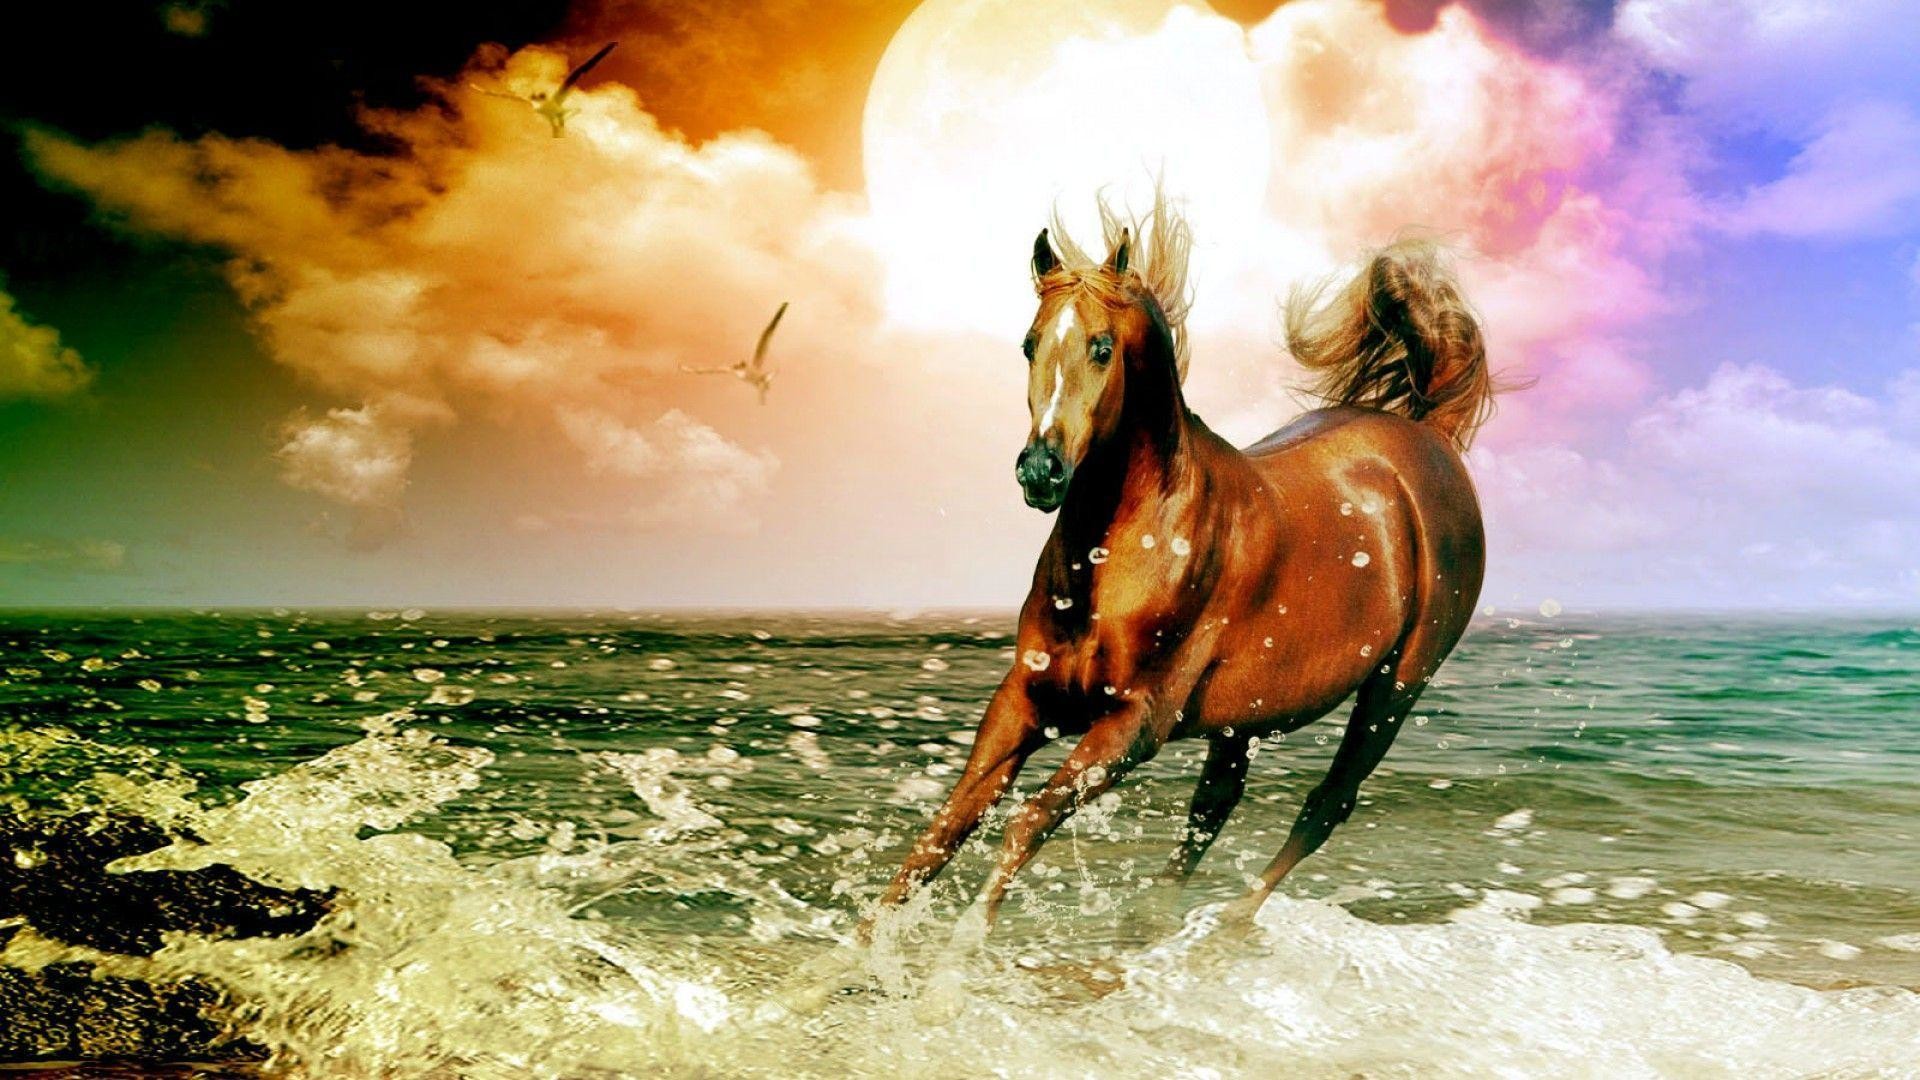 Horse desktop wallpaper pictures